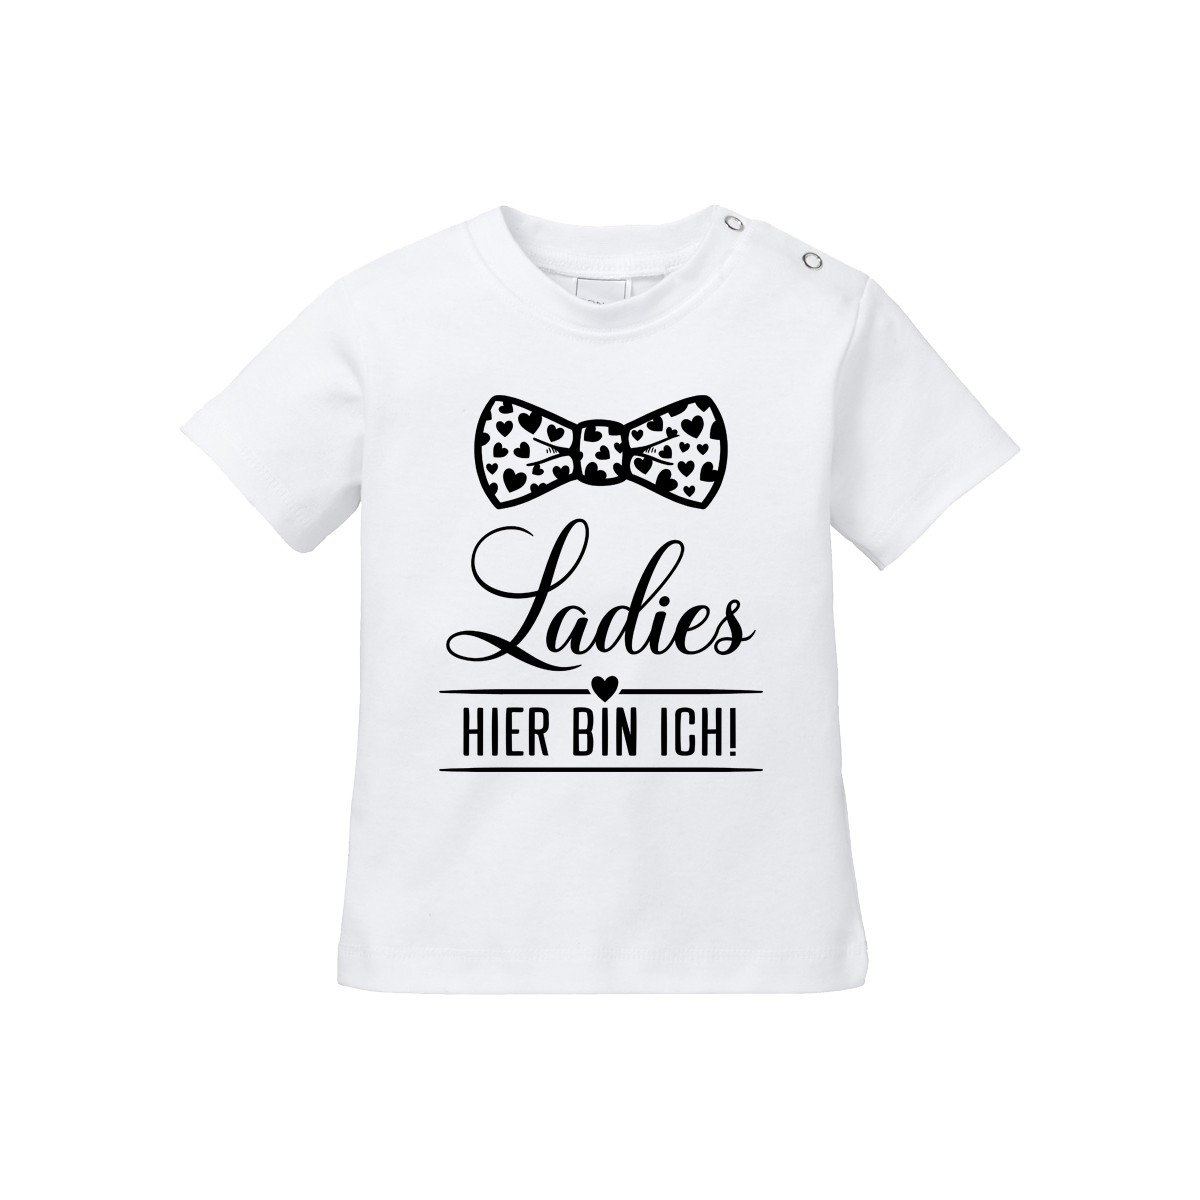 Kinder - Babyshirt Modell: Ladies - HIER BIN ICH!